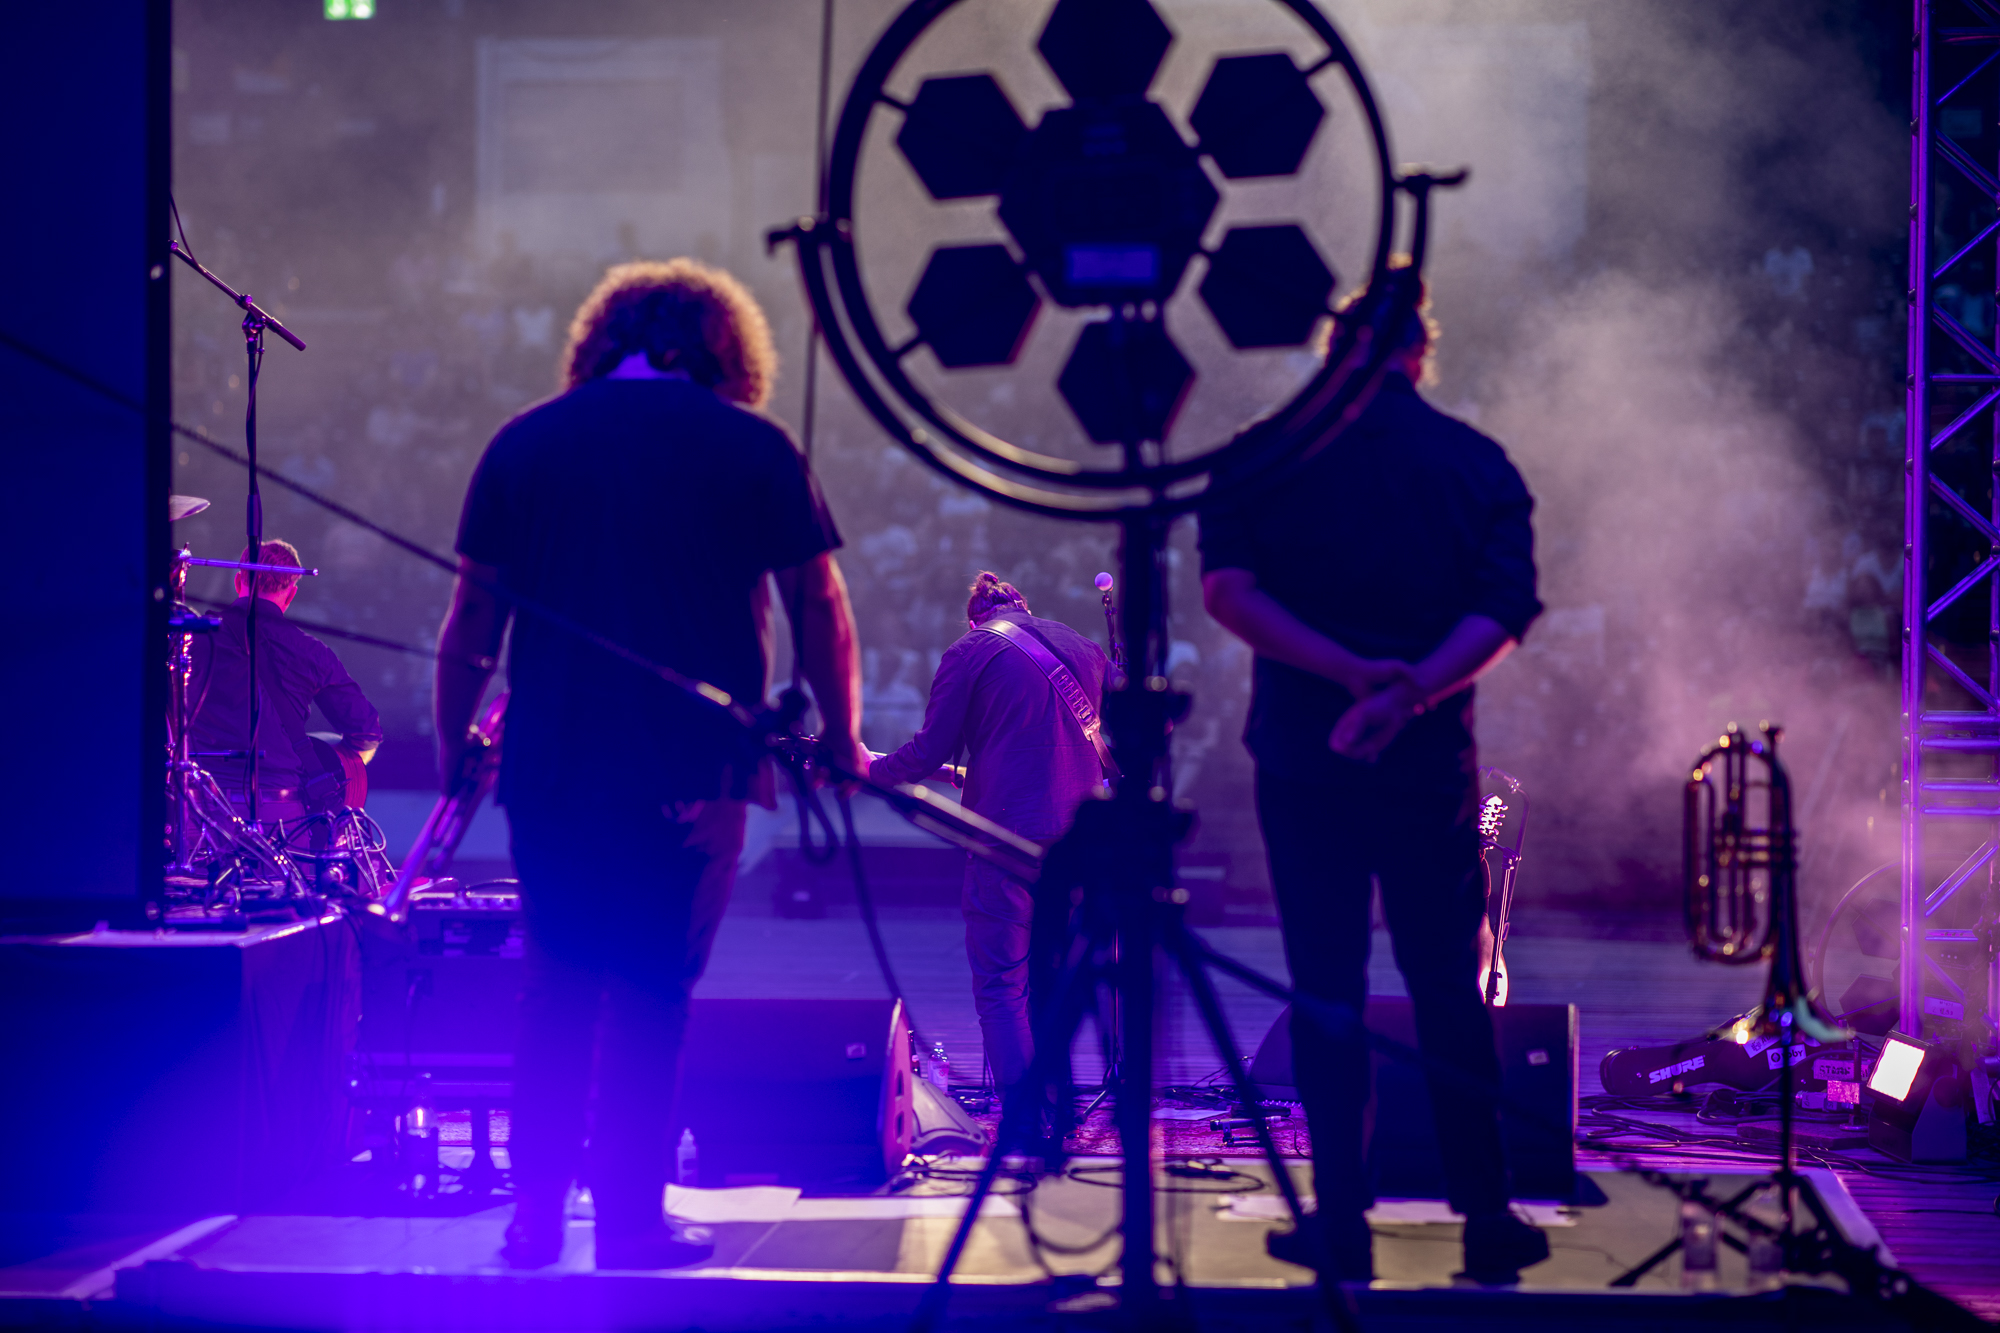 Es ist eine Band auf der Bühne von hinten zu sehen. Das Licht ist in violetten Tönen gehalten, man sieht Nebel von einer Nebelmaschine.